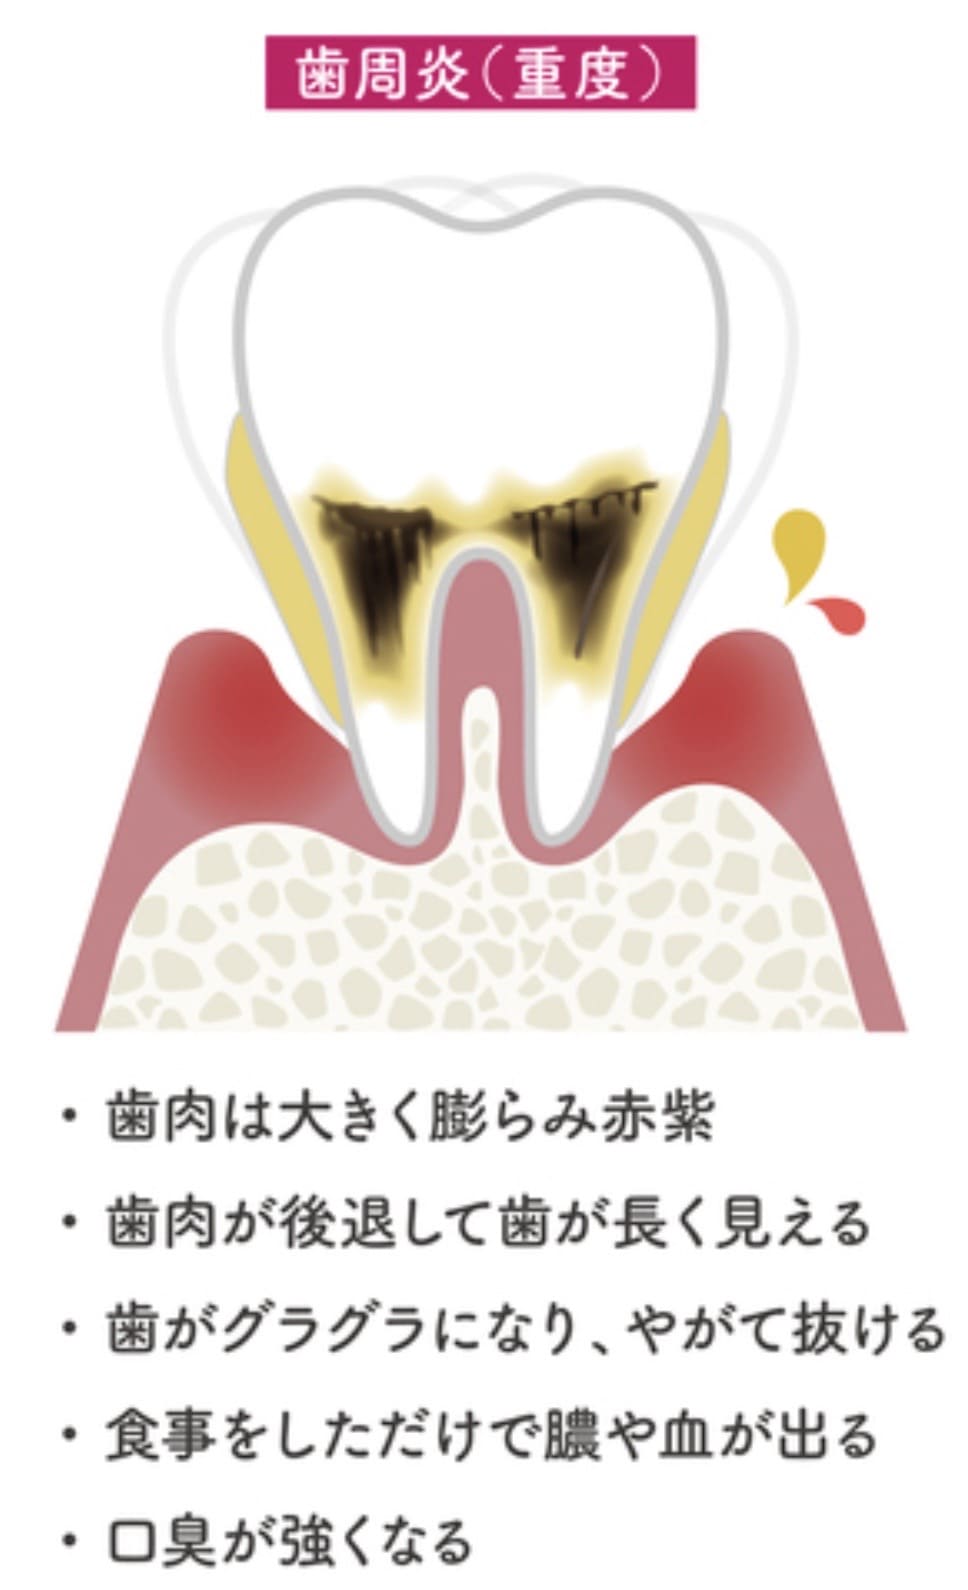 重度の歯周病の解説画像